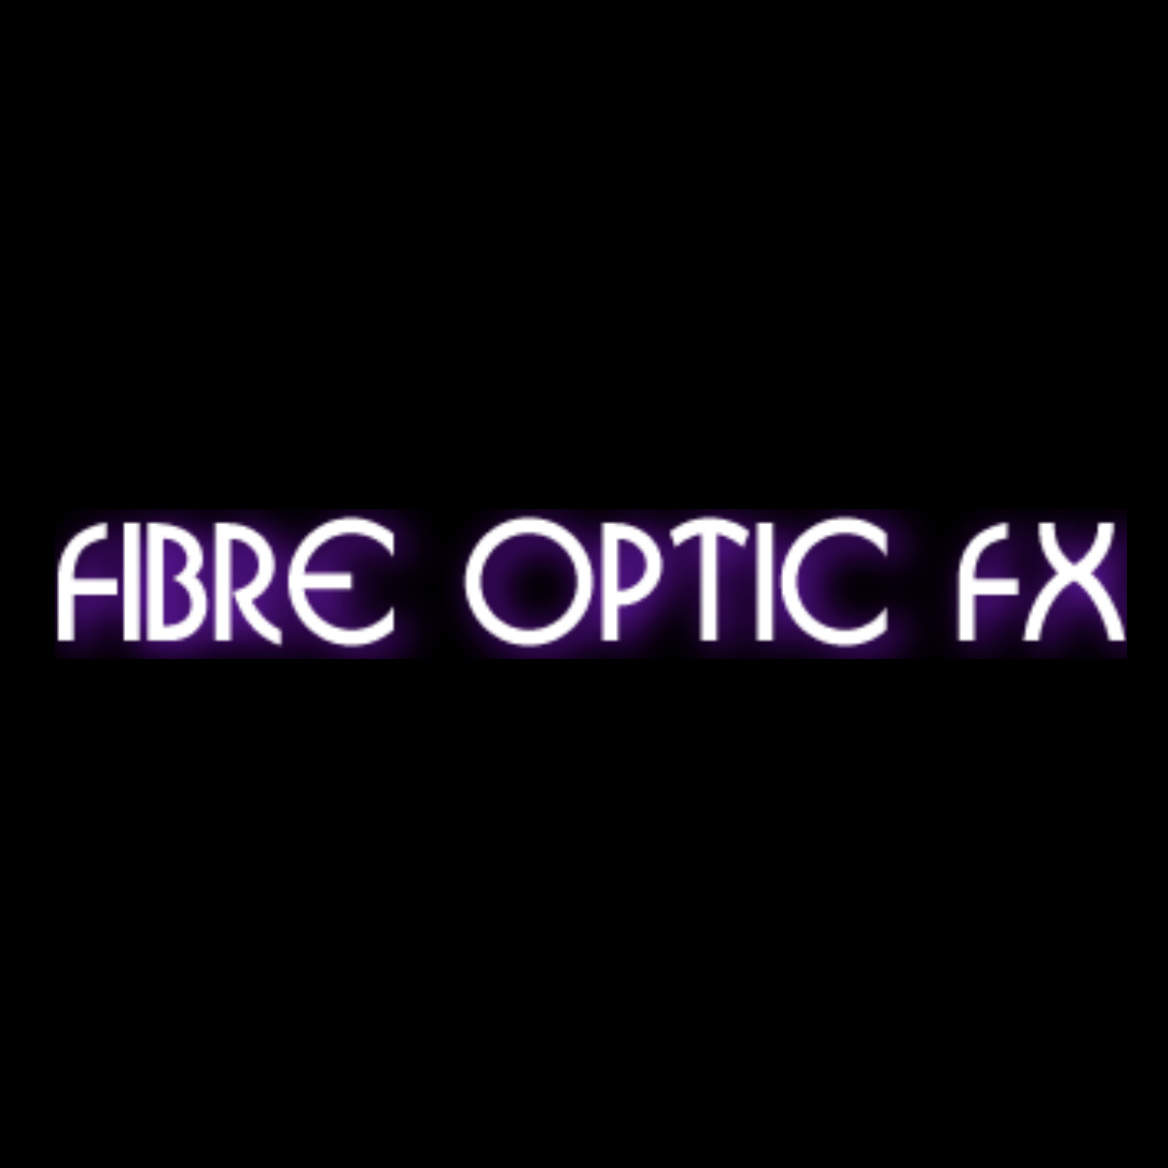 Fibre Optic FX